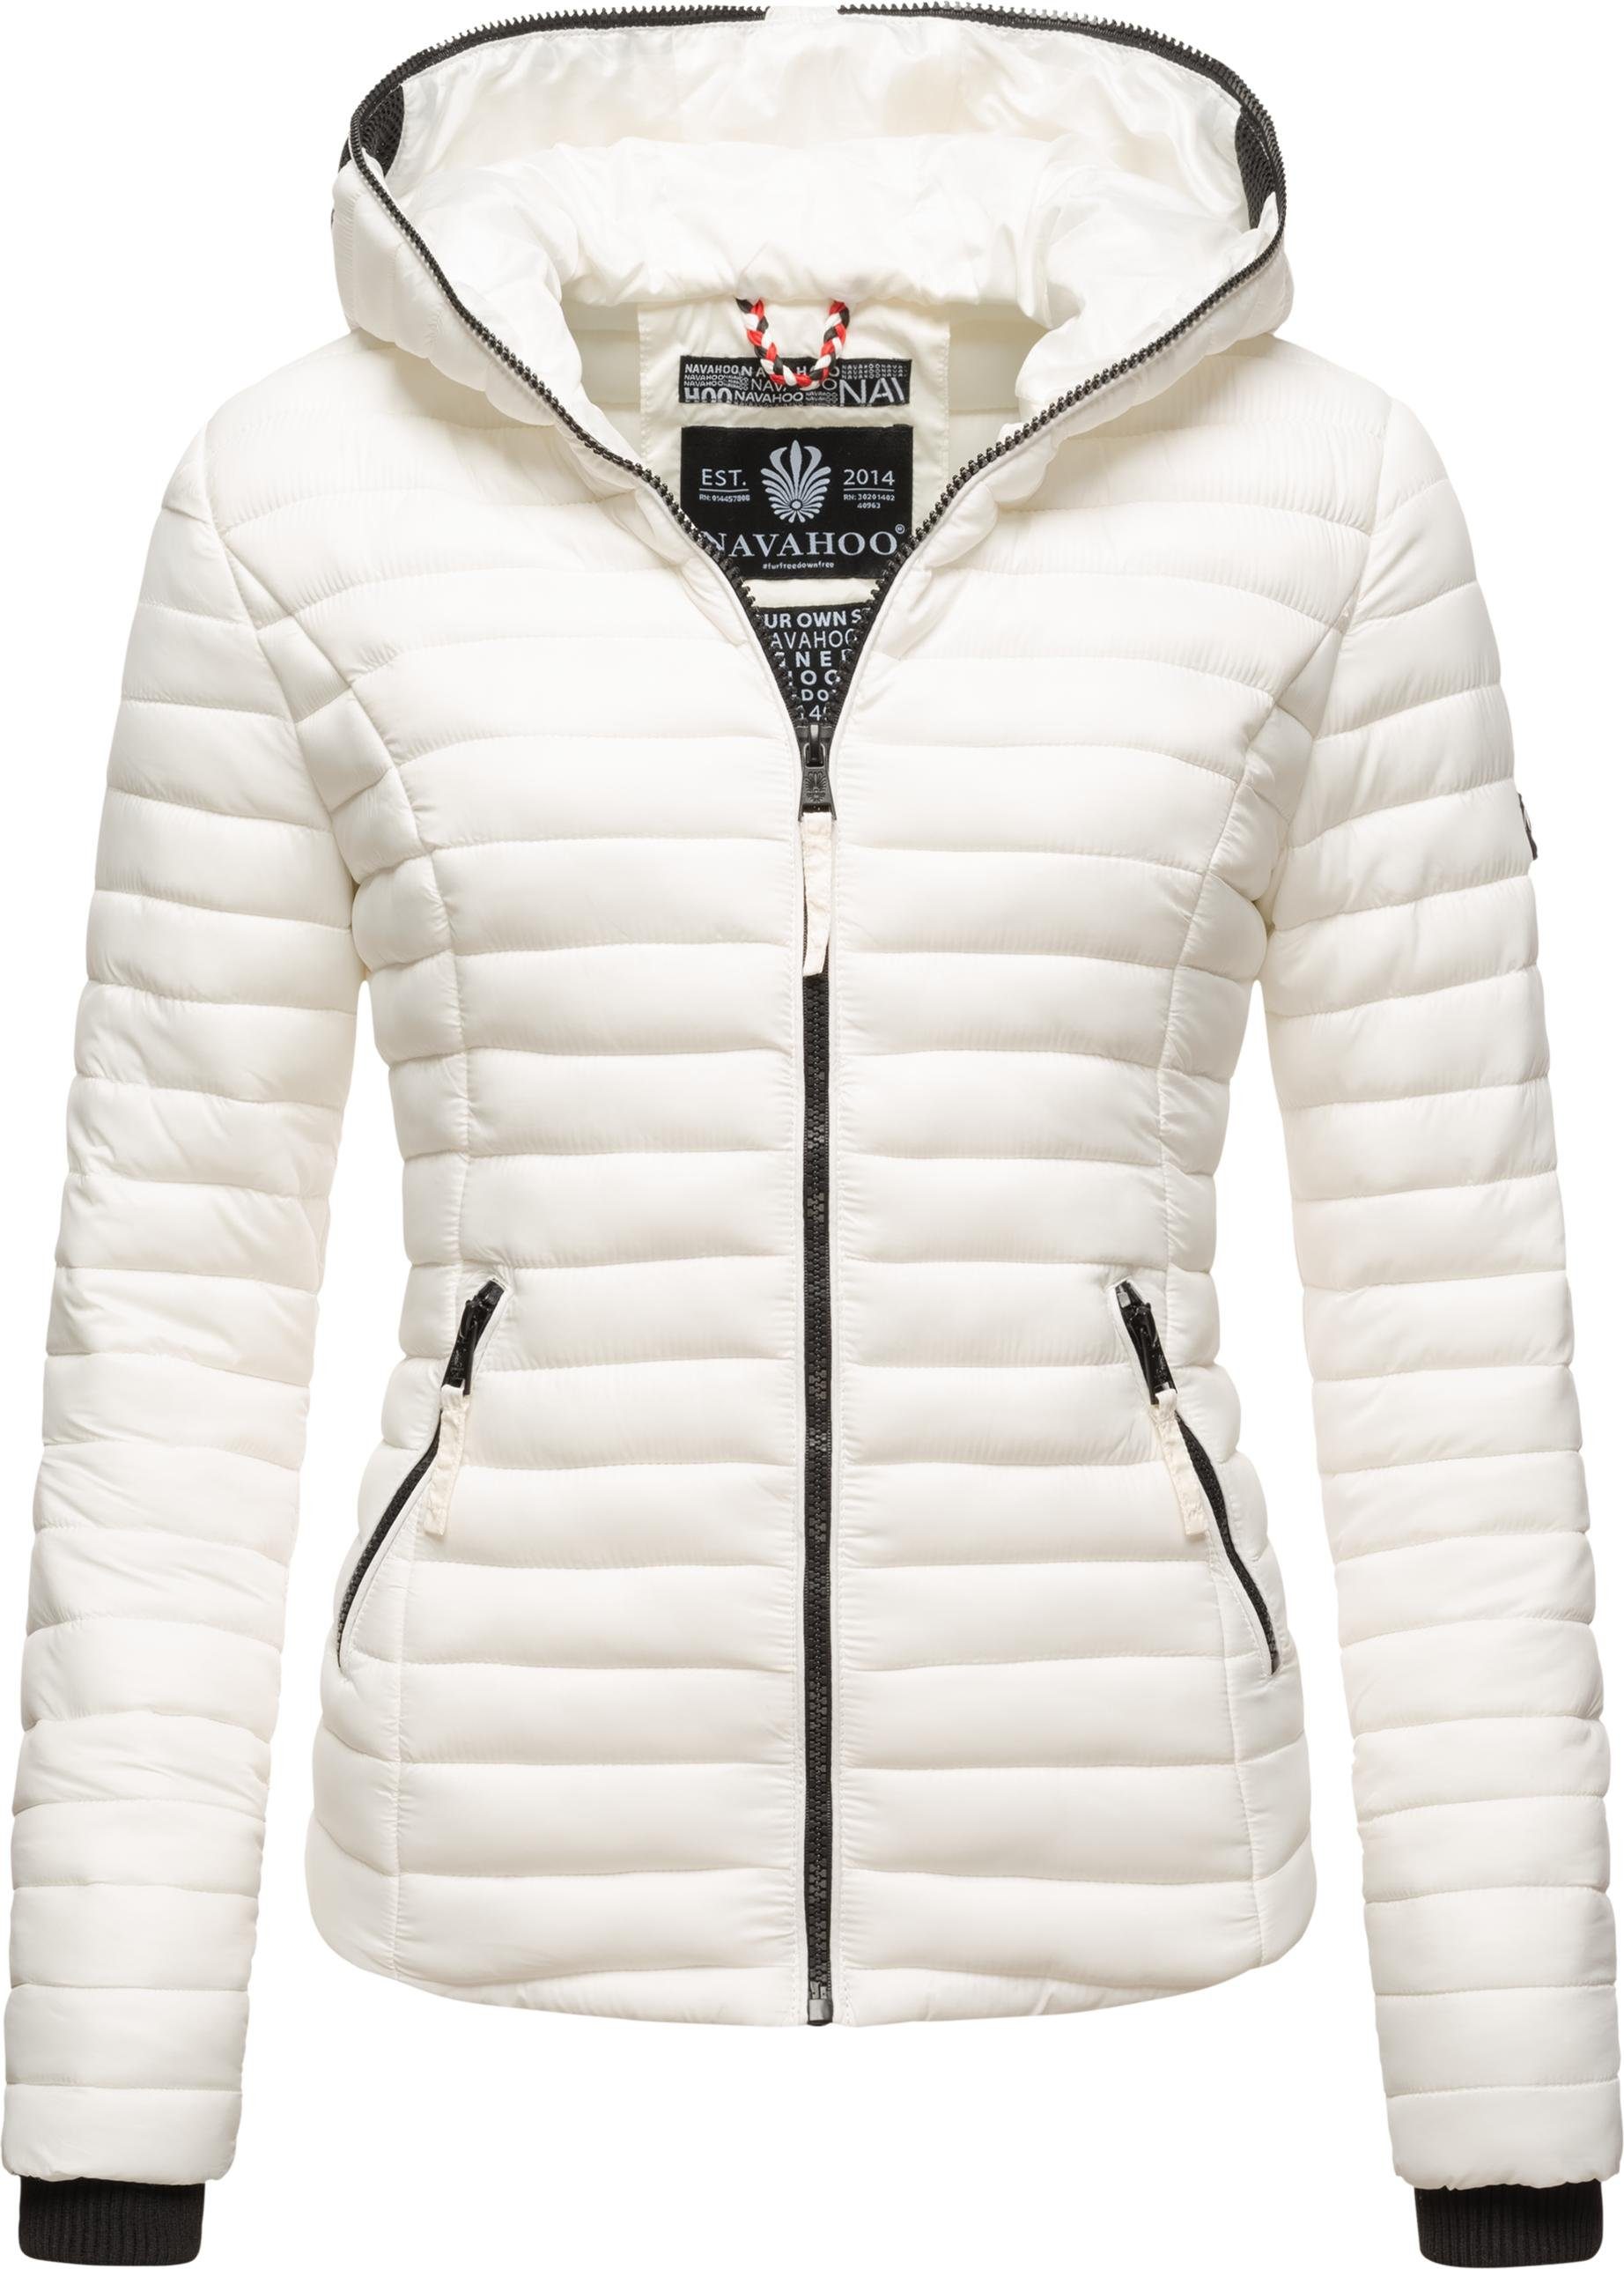 Weiße Jacke online kaufen | OTTO